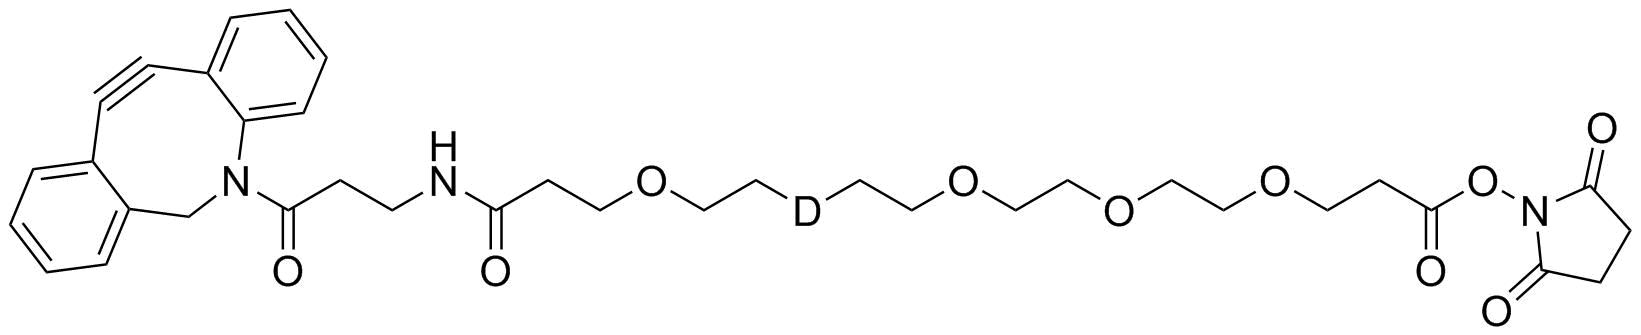 DBCO-NH-PEG5-NHS ester